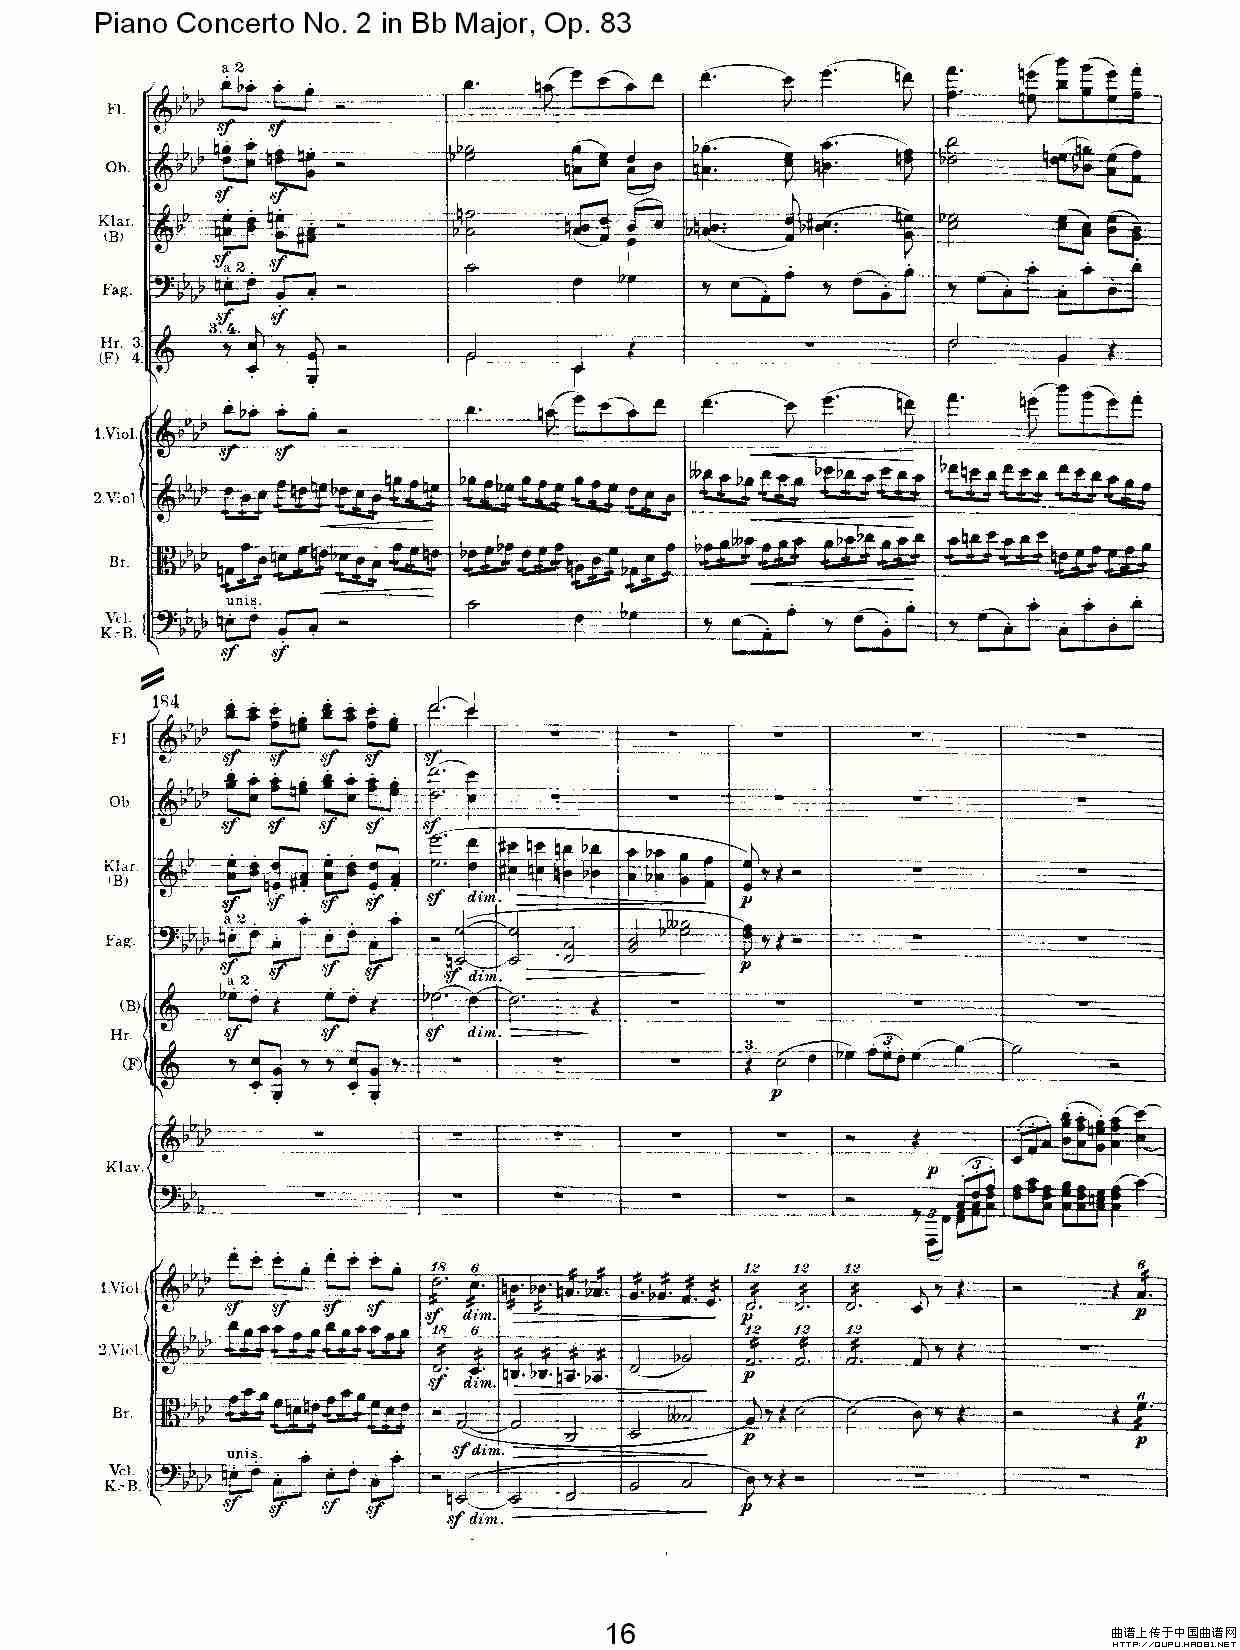 Bb大调钢琴第二协奏曲, Op.83第一乐章（一）